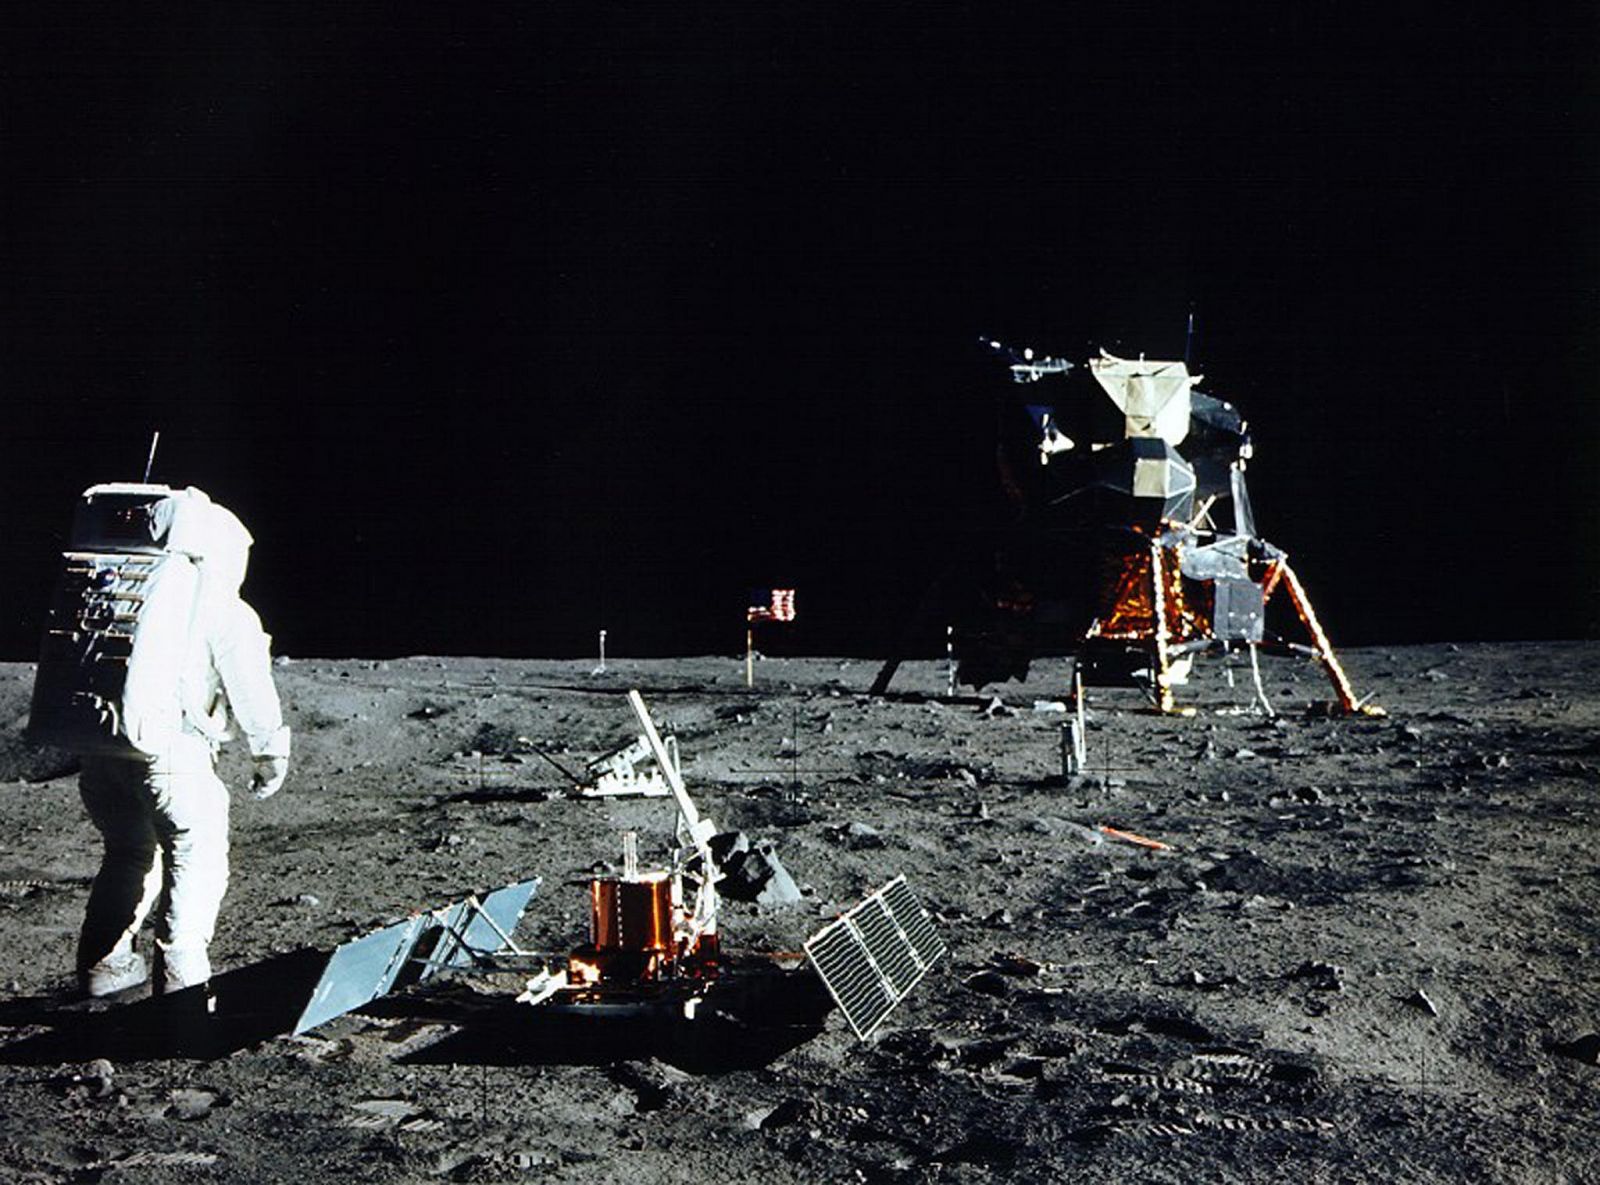 Imagen del astronauta del Apolo 11, Buzz Aldrin, en el primer paseo lunar.